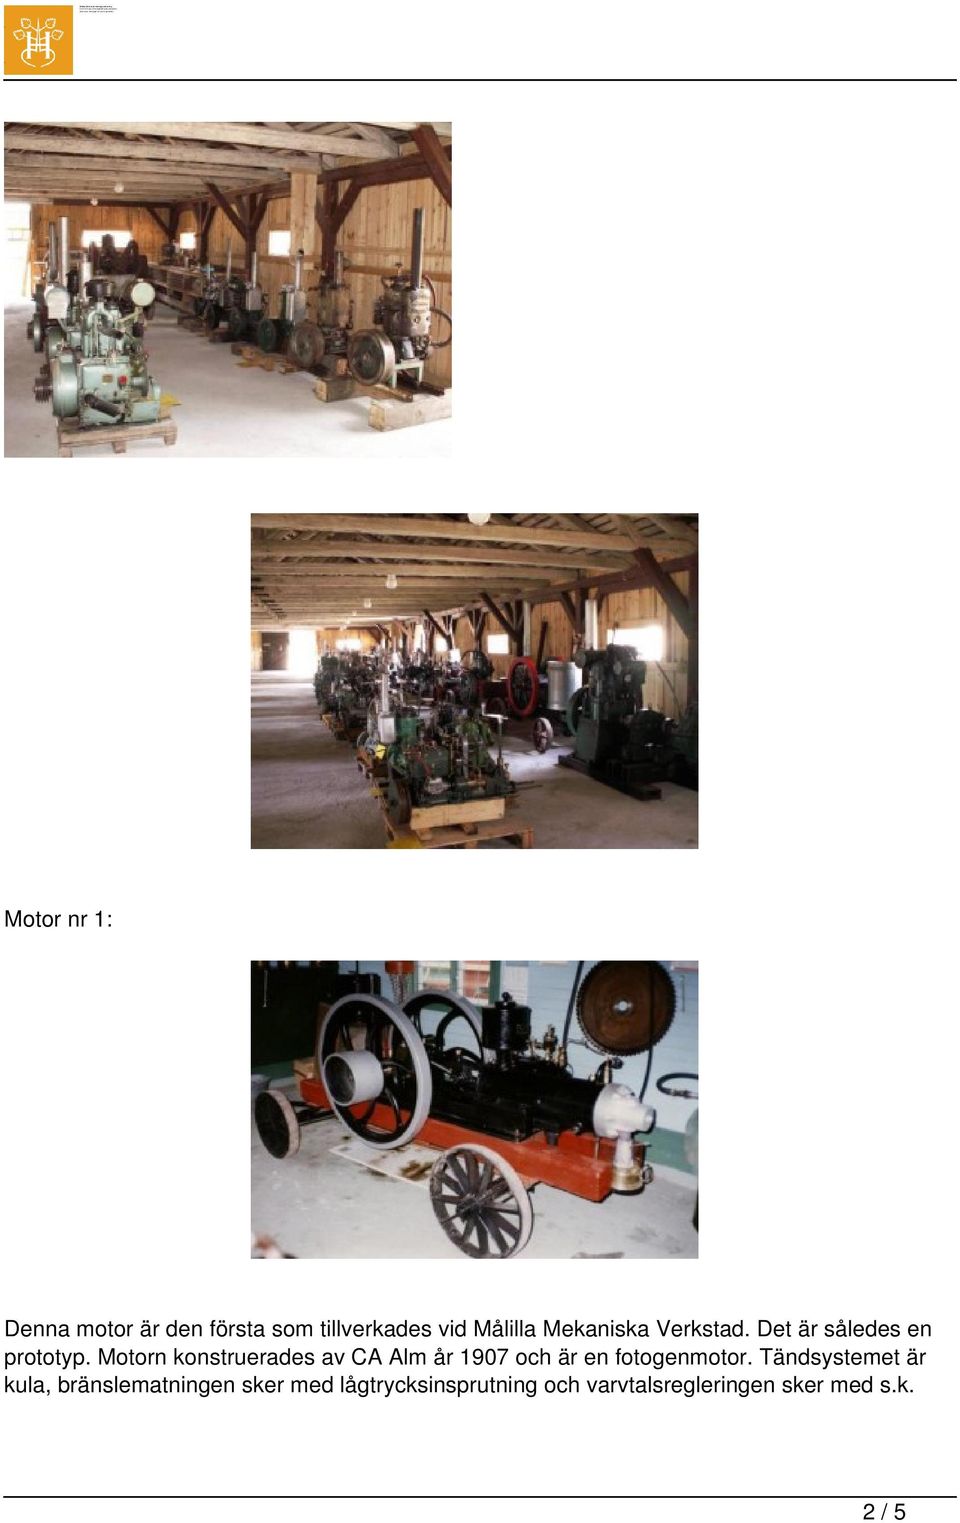 Motorn konstruerades av CA Alm år 1907 och är en fotogenmotor.